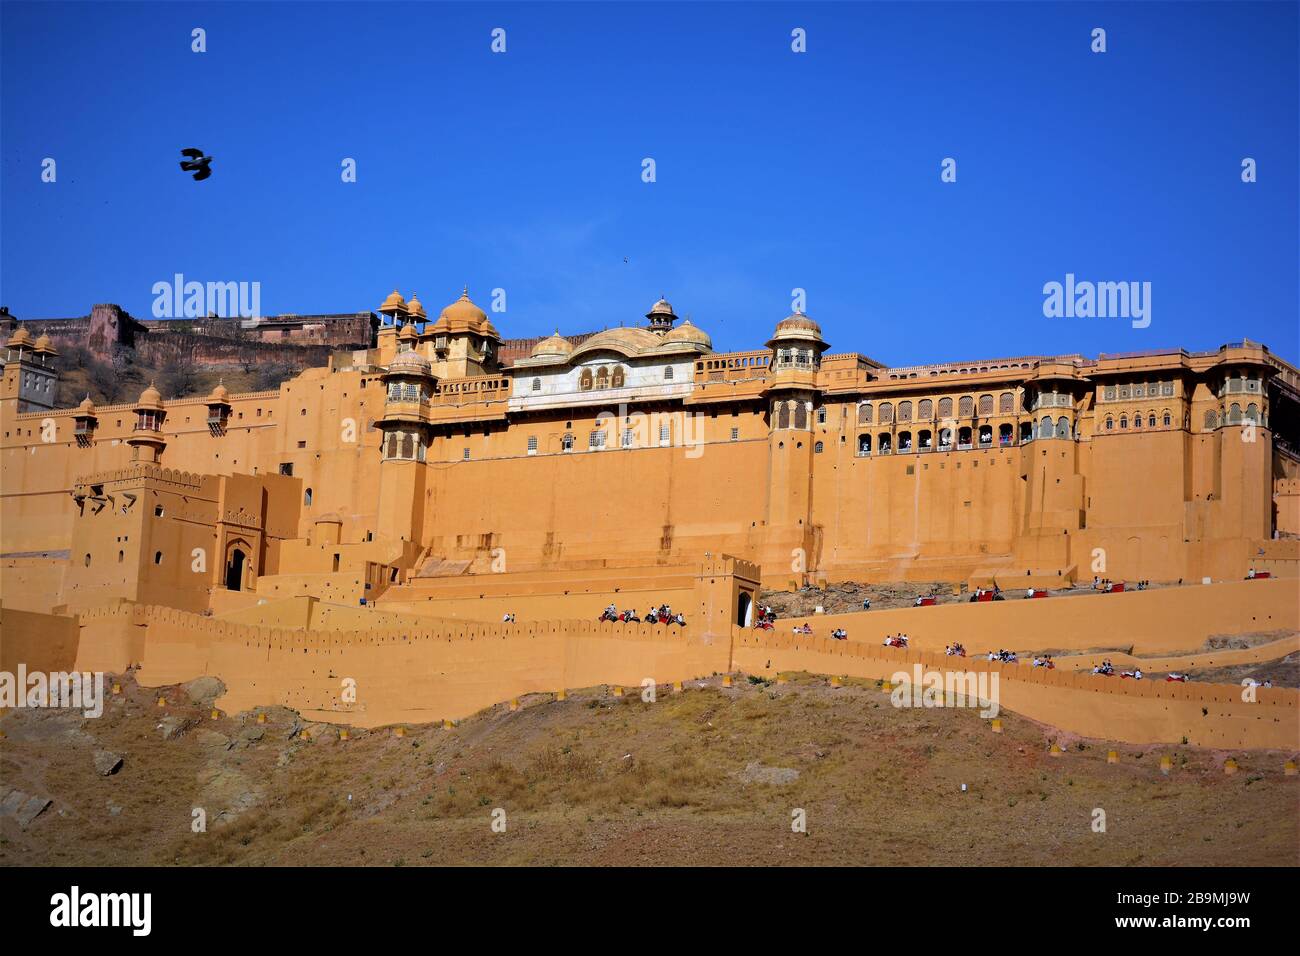 Vista panoramica della storica Amber Place costruita in arenaria rossa e situata in alto su una collina, Jaipur, India Foto Stock